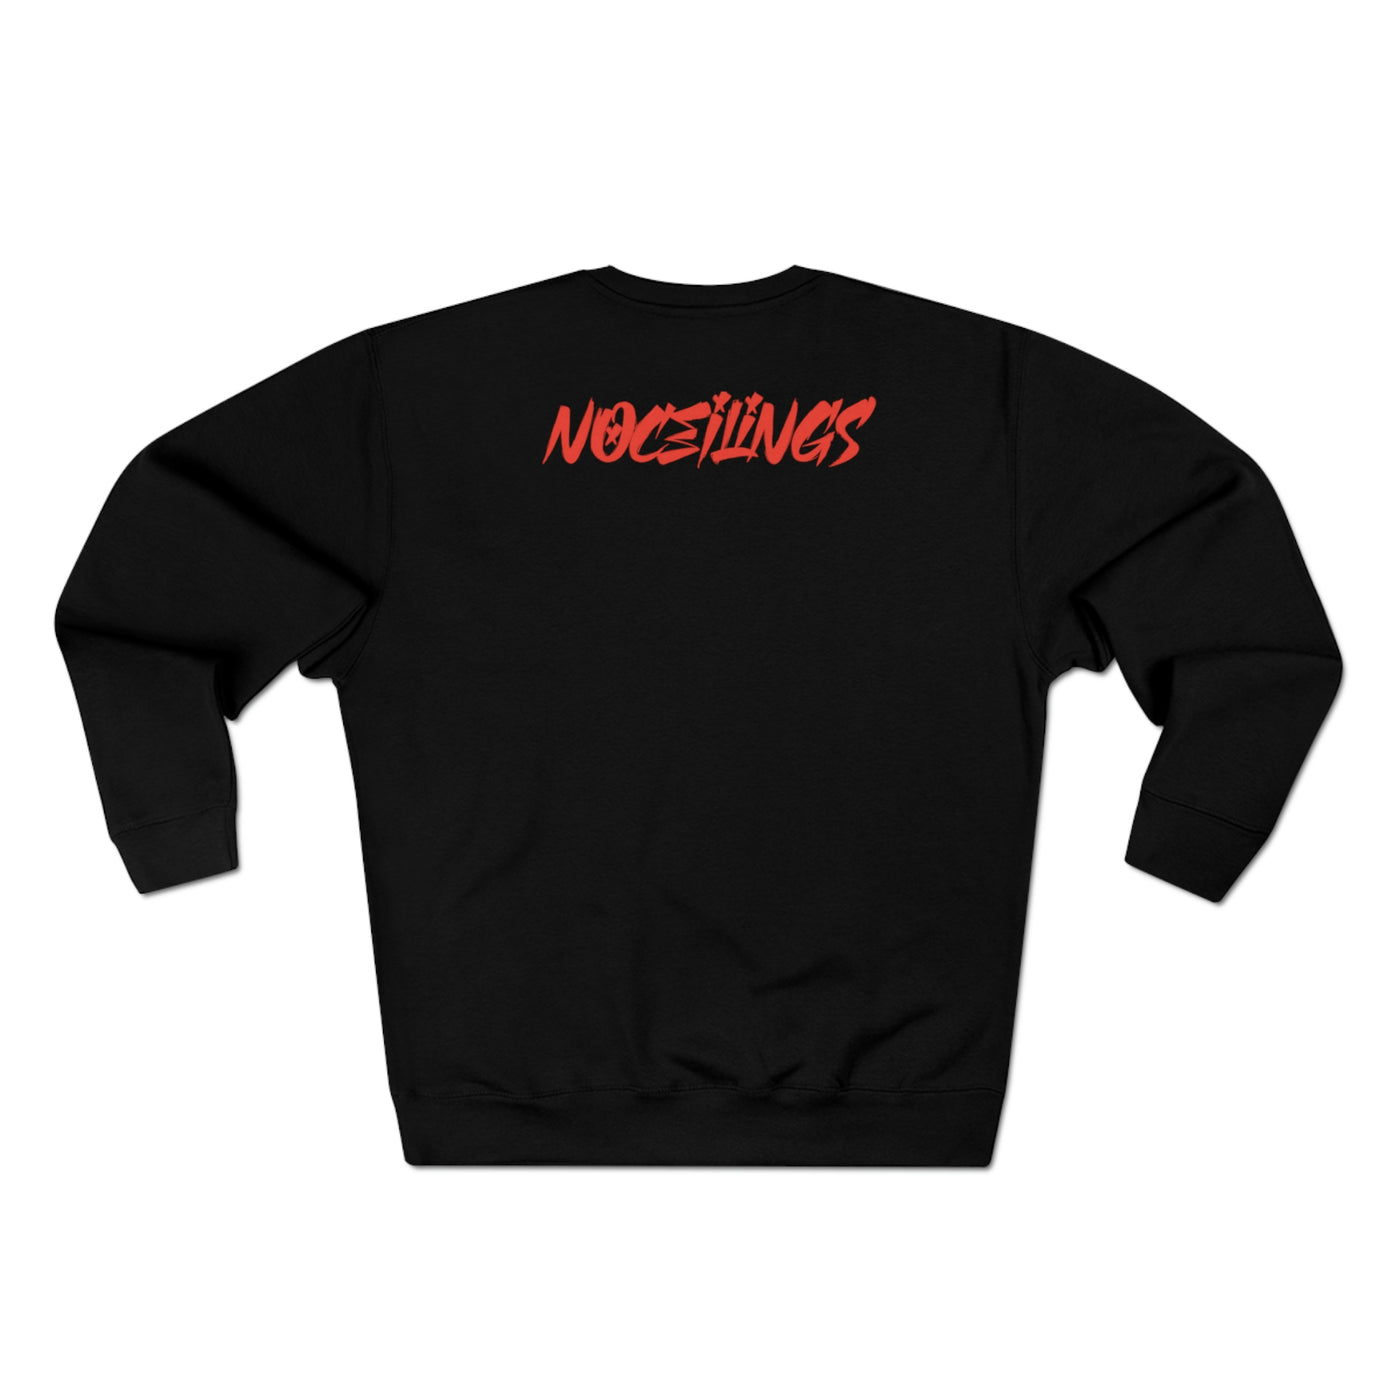 "Til I Die" Blk/Red/Wht Premium Crewneck Sweatshirt - NoCeilingsClothing